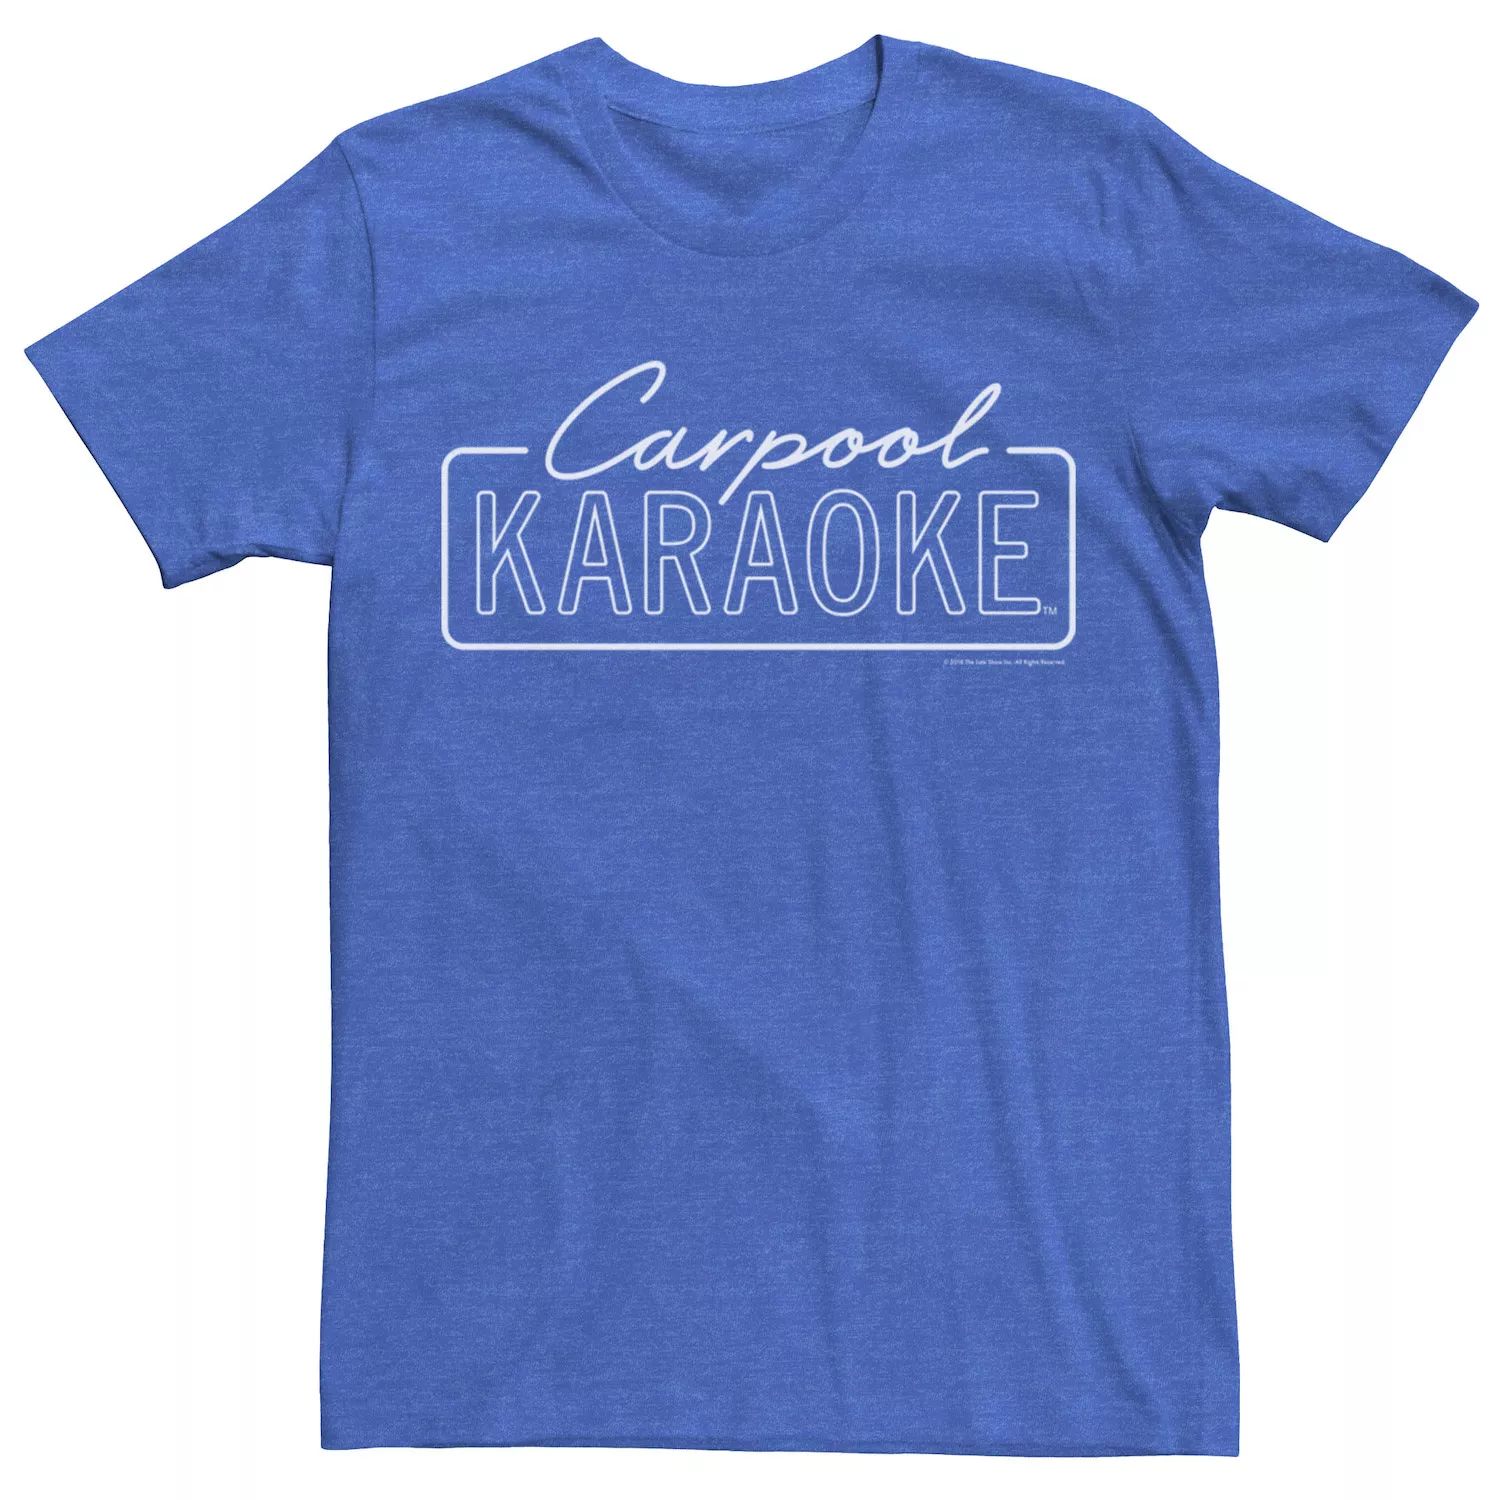 Мужская футболка для караоке The Late Late Show с Джеймсом Корденом Carpool Licensed Character